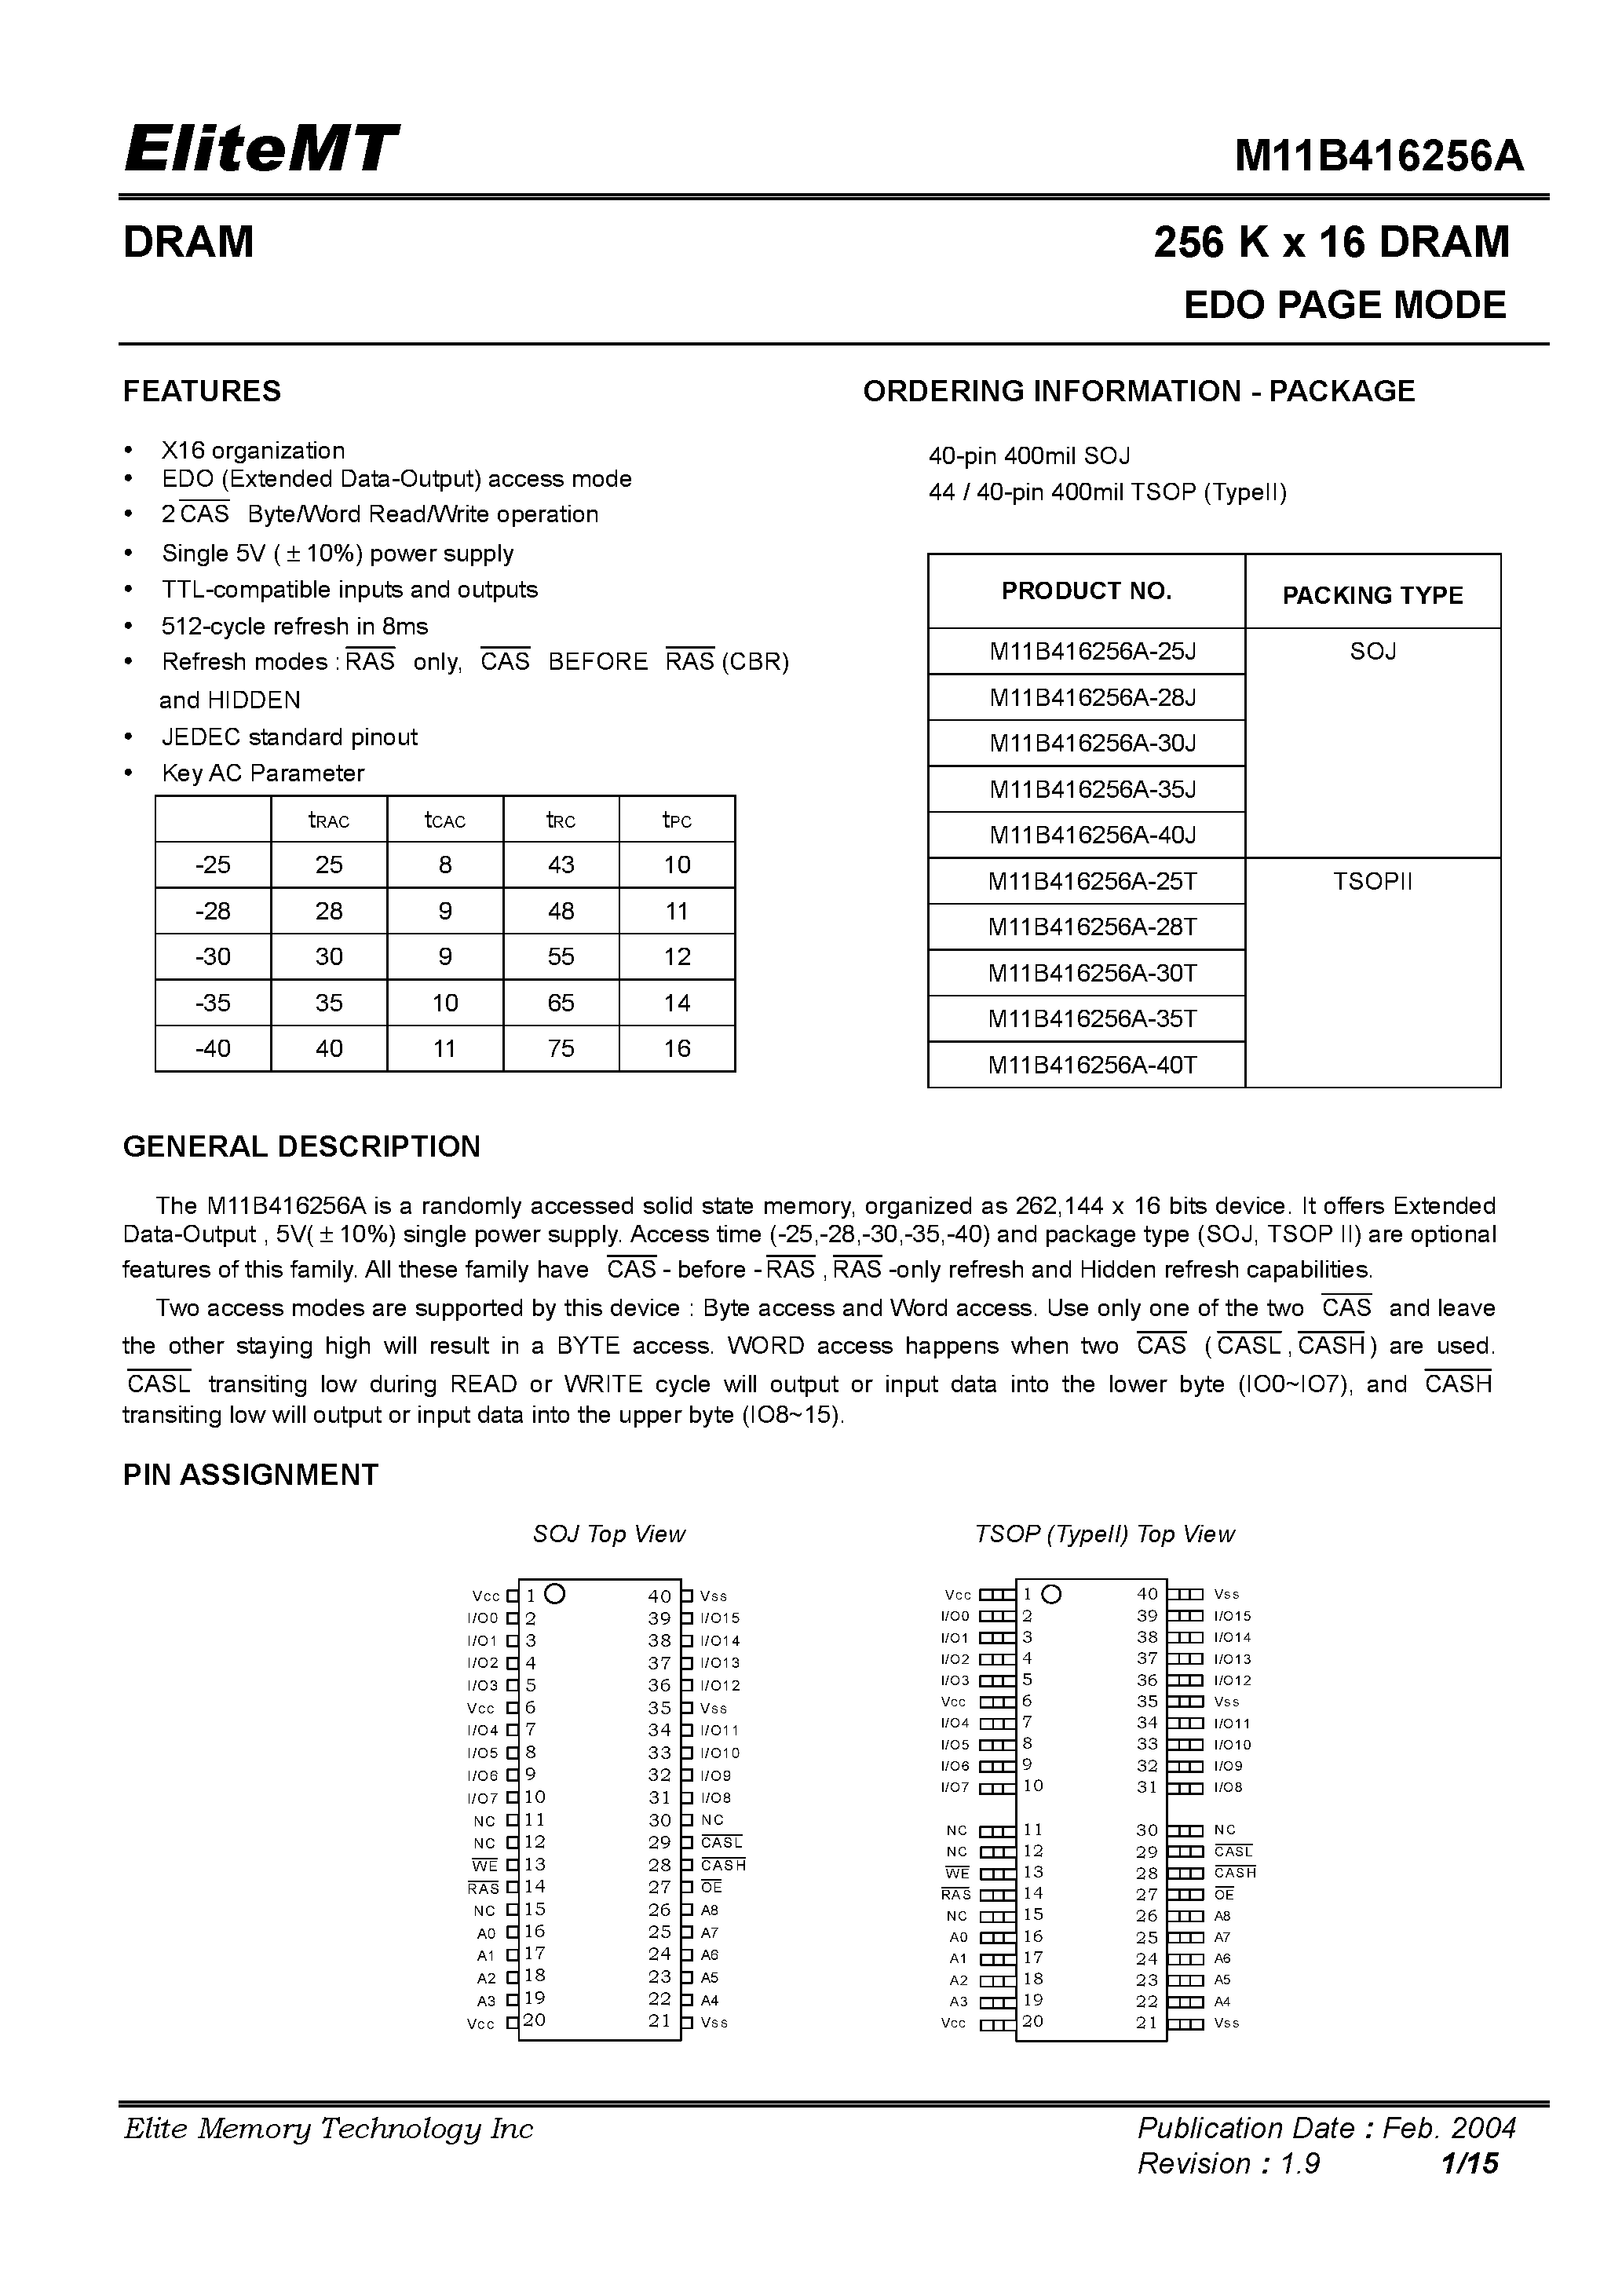 Datasheet M11B416256A-35T - 256 K x 16 DRAM EDO PAGE MODE page 1